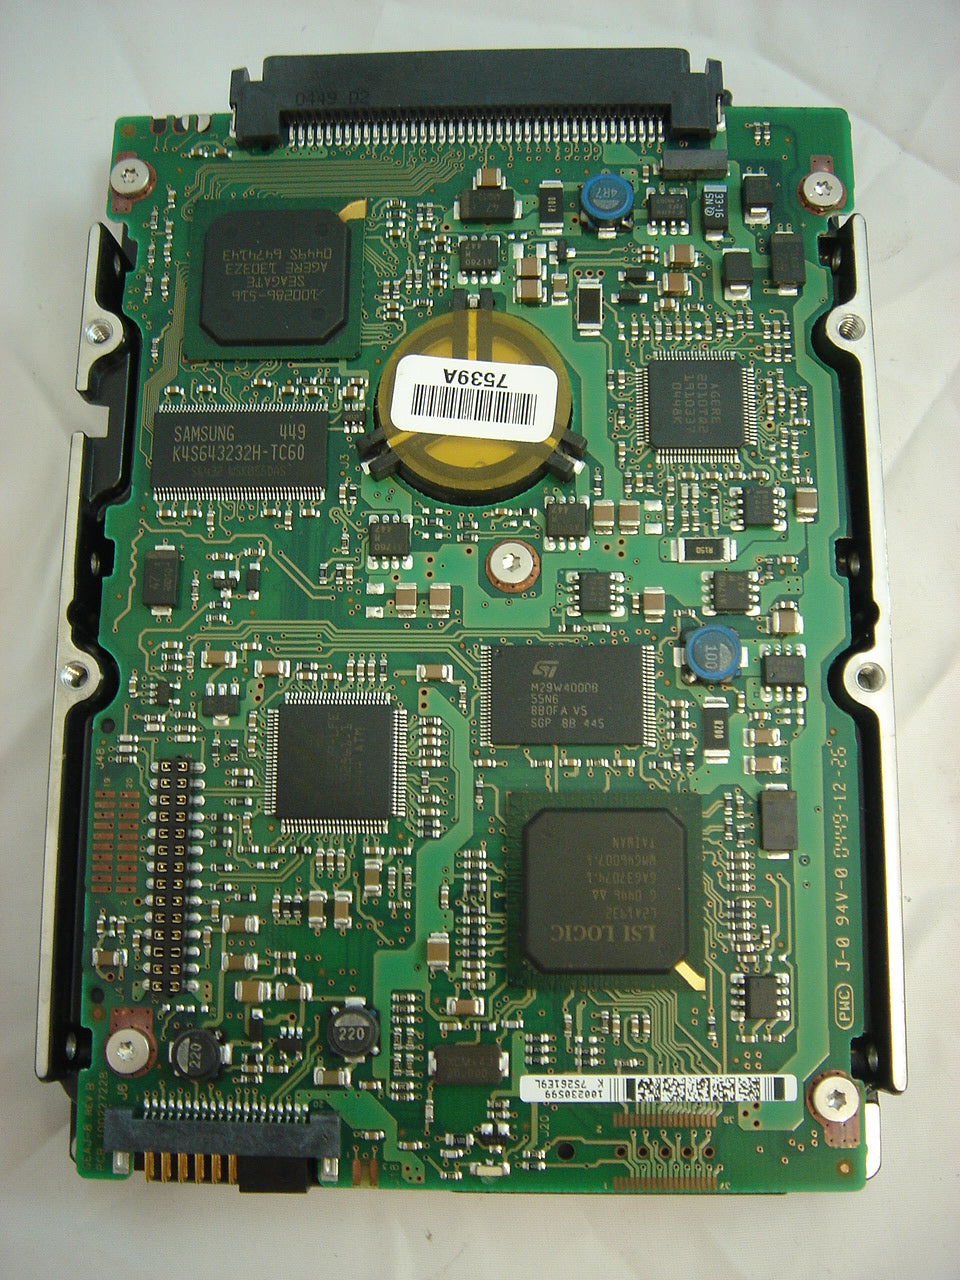 9V4006-007 - Seagate Dell 36GB 10K RPM U320 80PIN SCSI - Refurbished